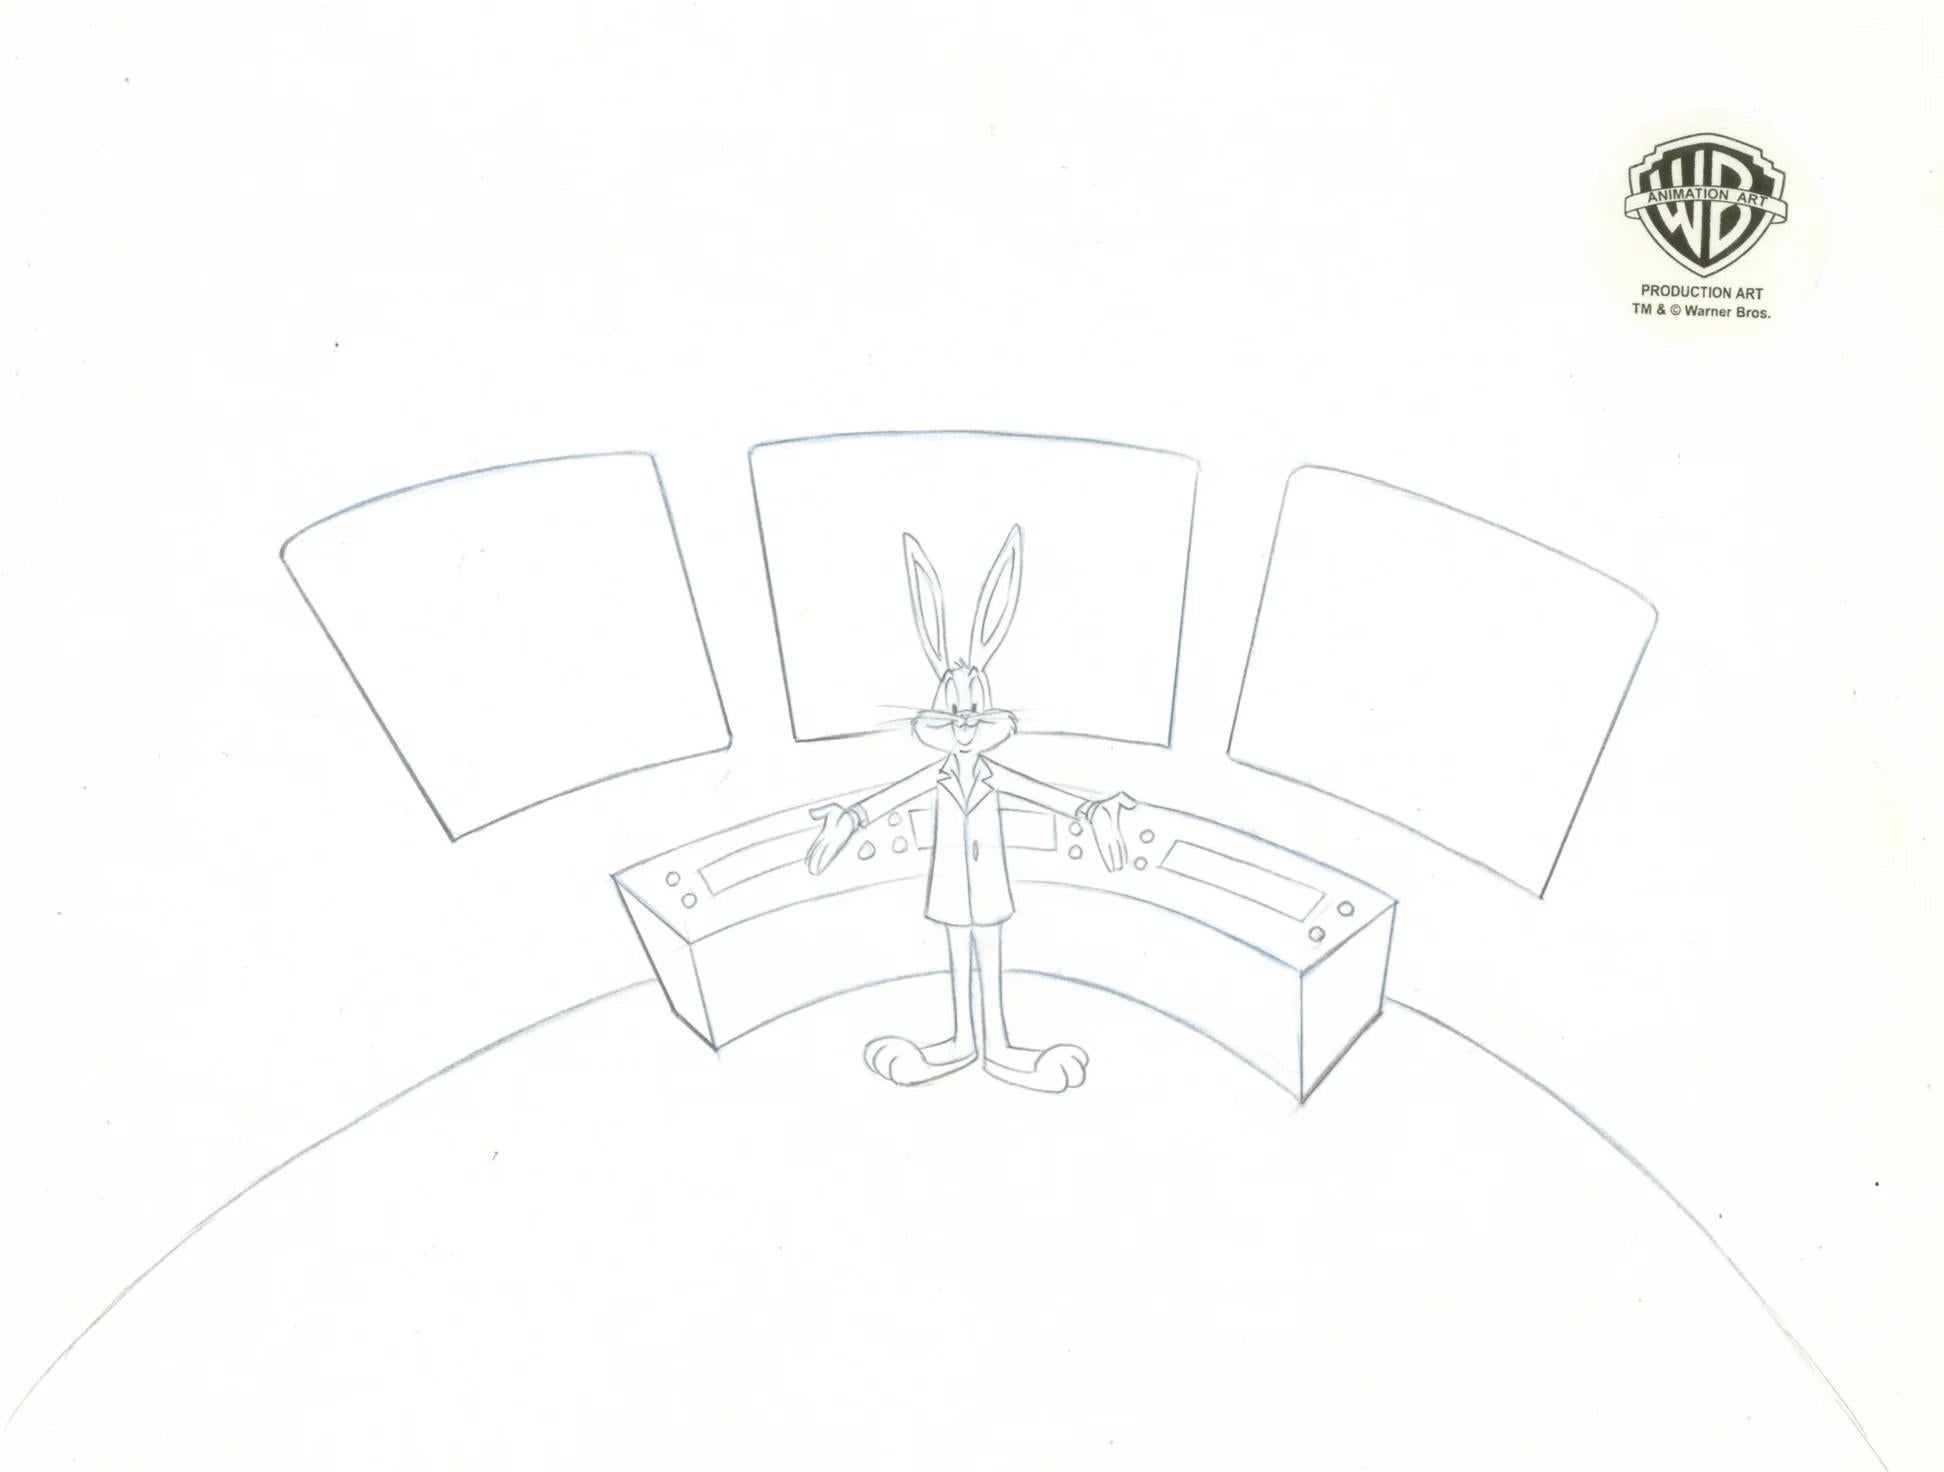 Looney Tunes Original Produktion Zeichnung Bugs Bunny – Art von Looney Tunes Studio Artists